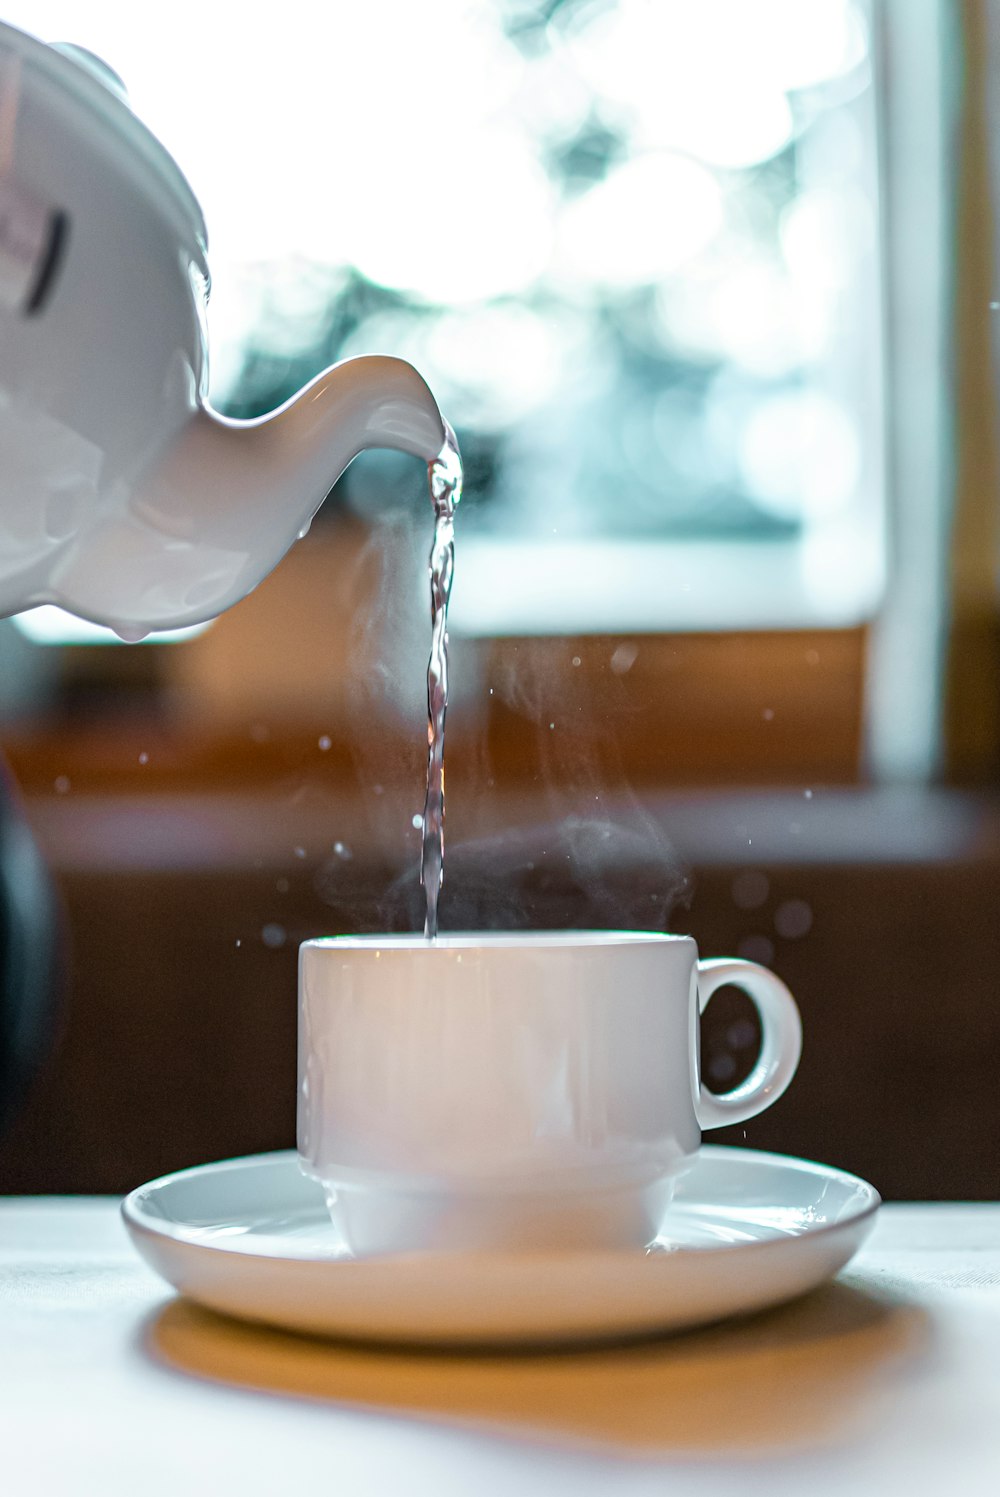 white ceramic teapot pouring water on white ceramic teacup